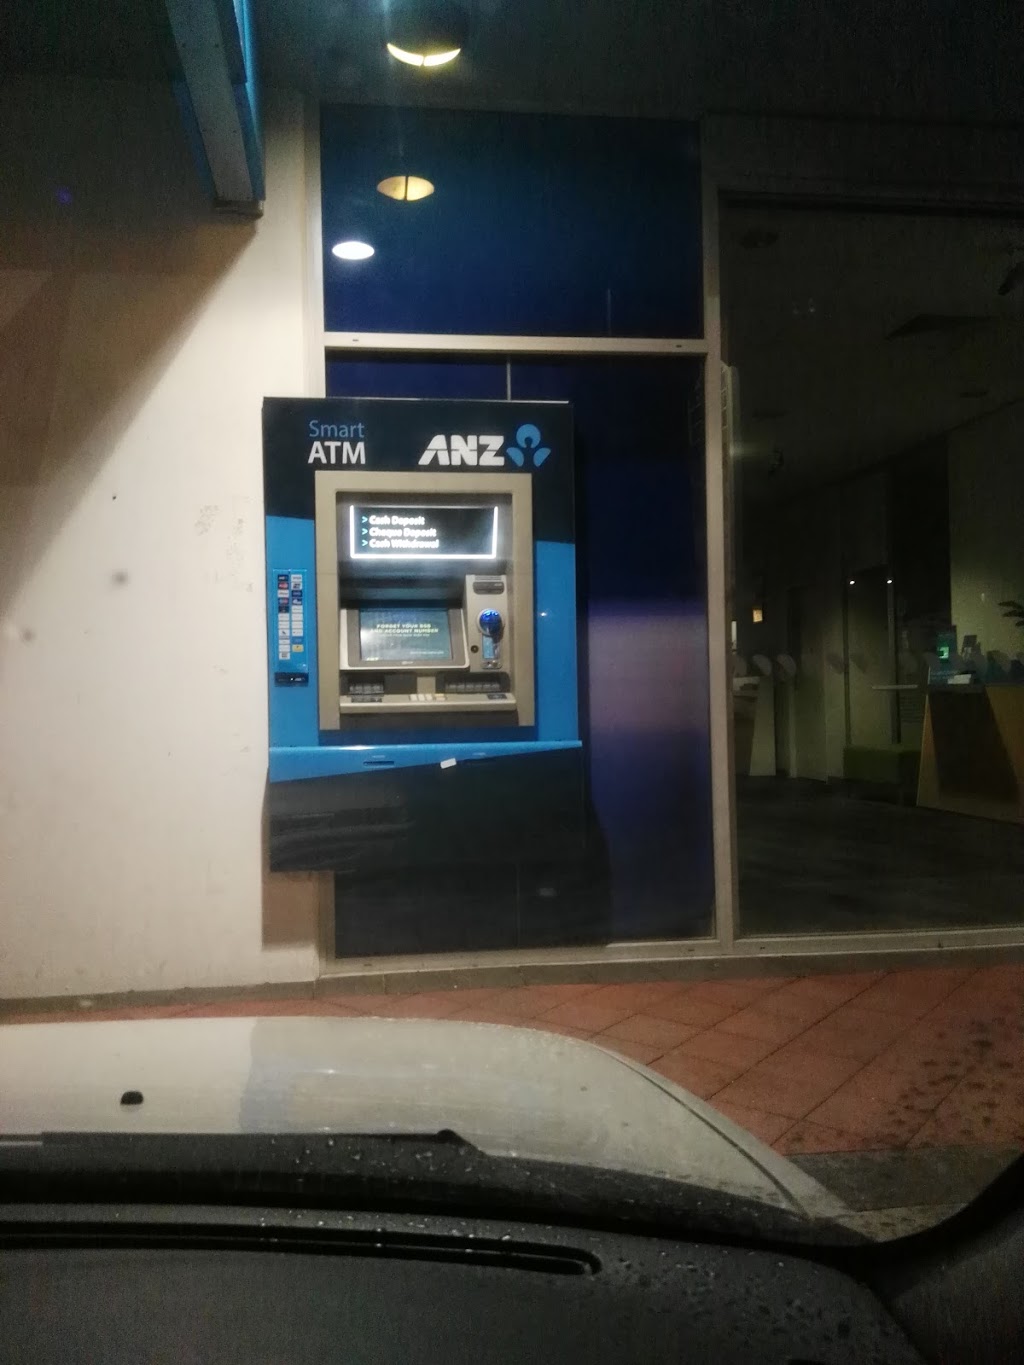 ANZ ATM Wanneroo (Smart) | atm | Wanneroo Rd & Hastings Street, Wanneroo WA 6065, Australia | 131314 OR +61 131314